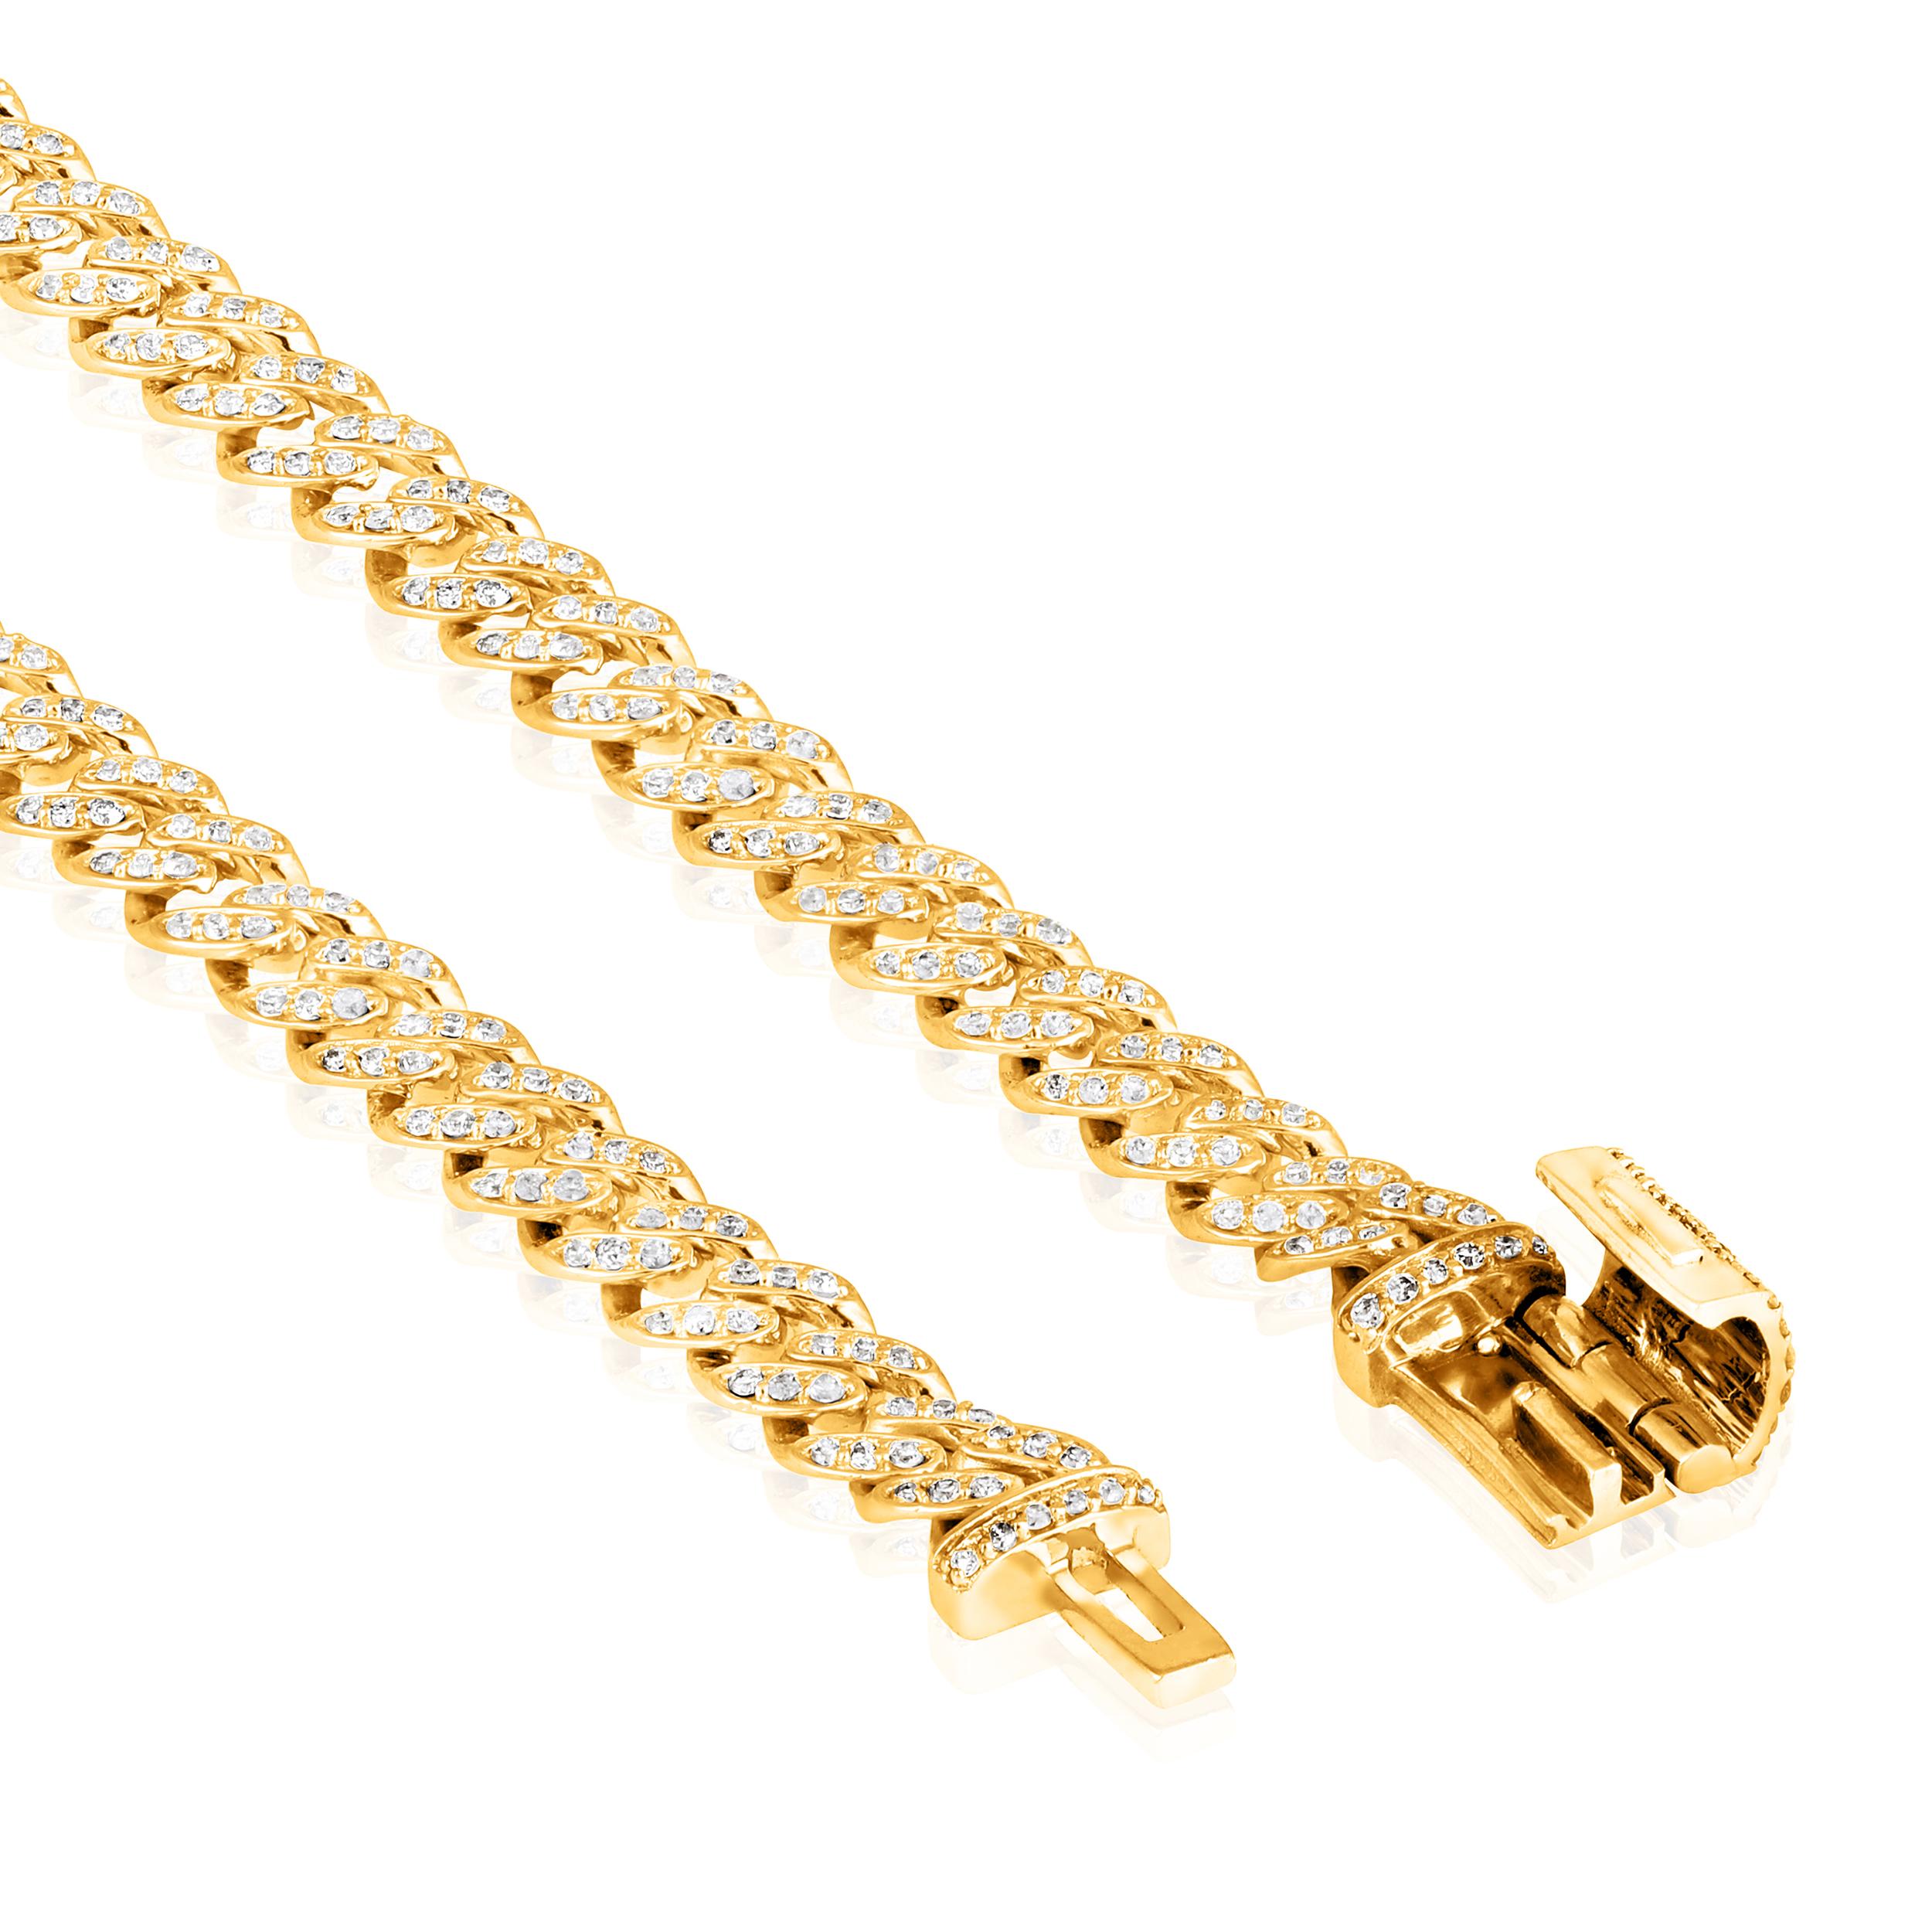 Fabriqué en or jaune 10K de 5,58 grammes, le bracelet contient 432 pierres de diamants ronds d'un total de 0,83 carat de couleur F-G et de carat I1-I2. La longueur du bracelet est de 7 pouces.

Ce bijou sera confectionné par nos artisans qualifiés